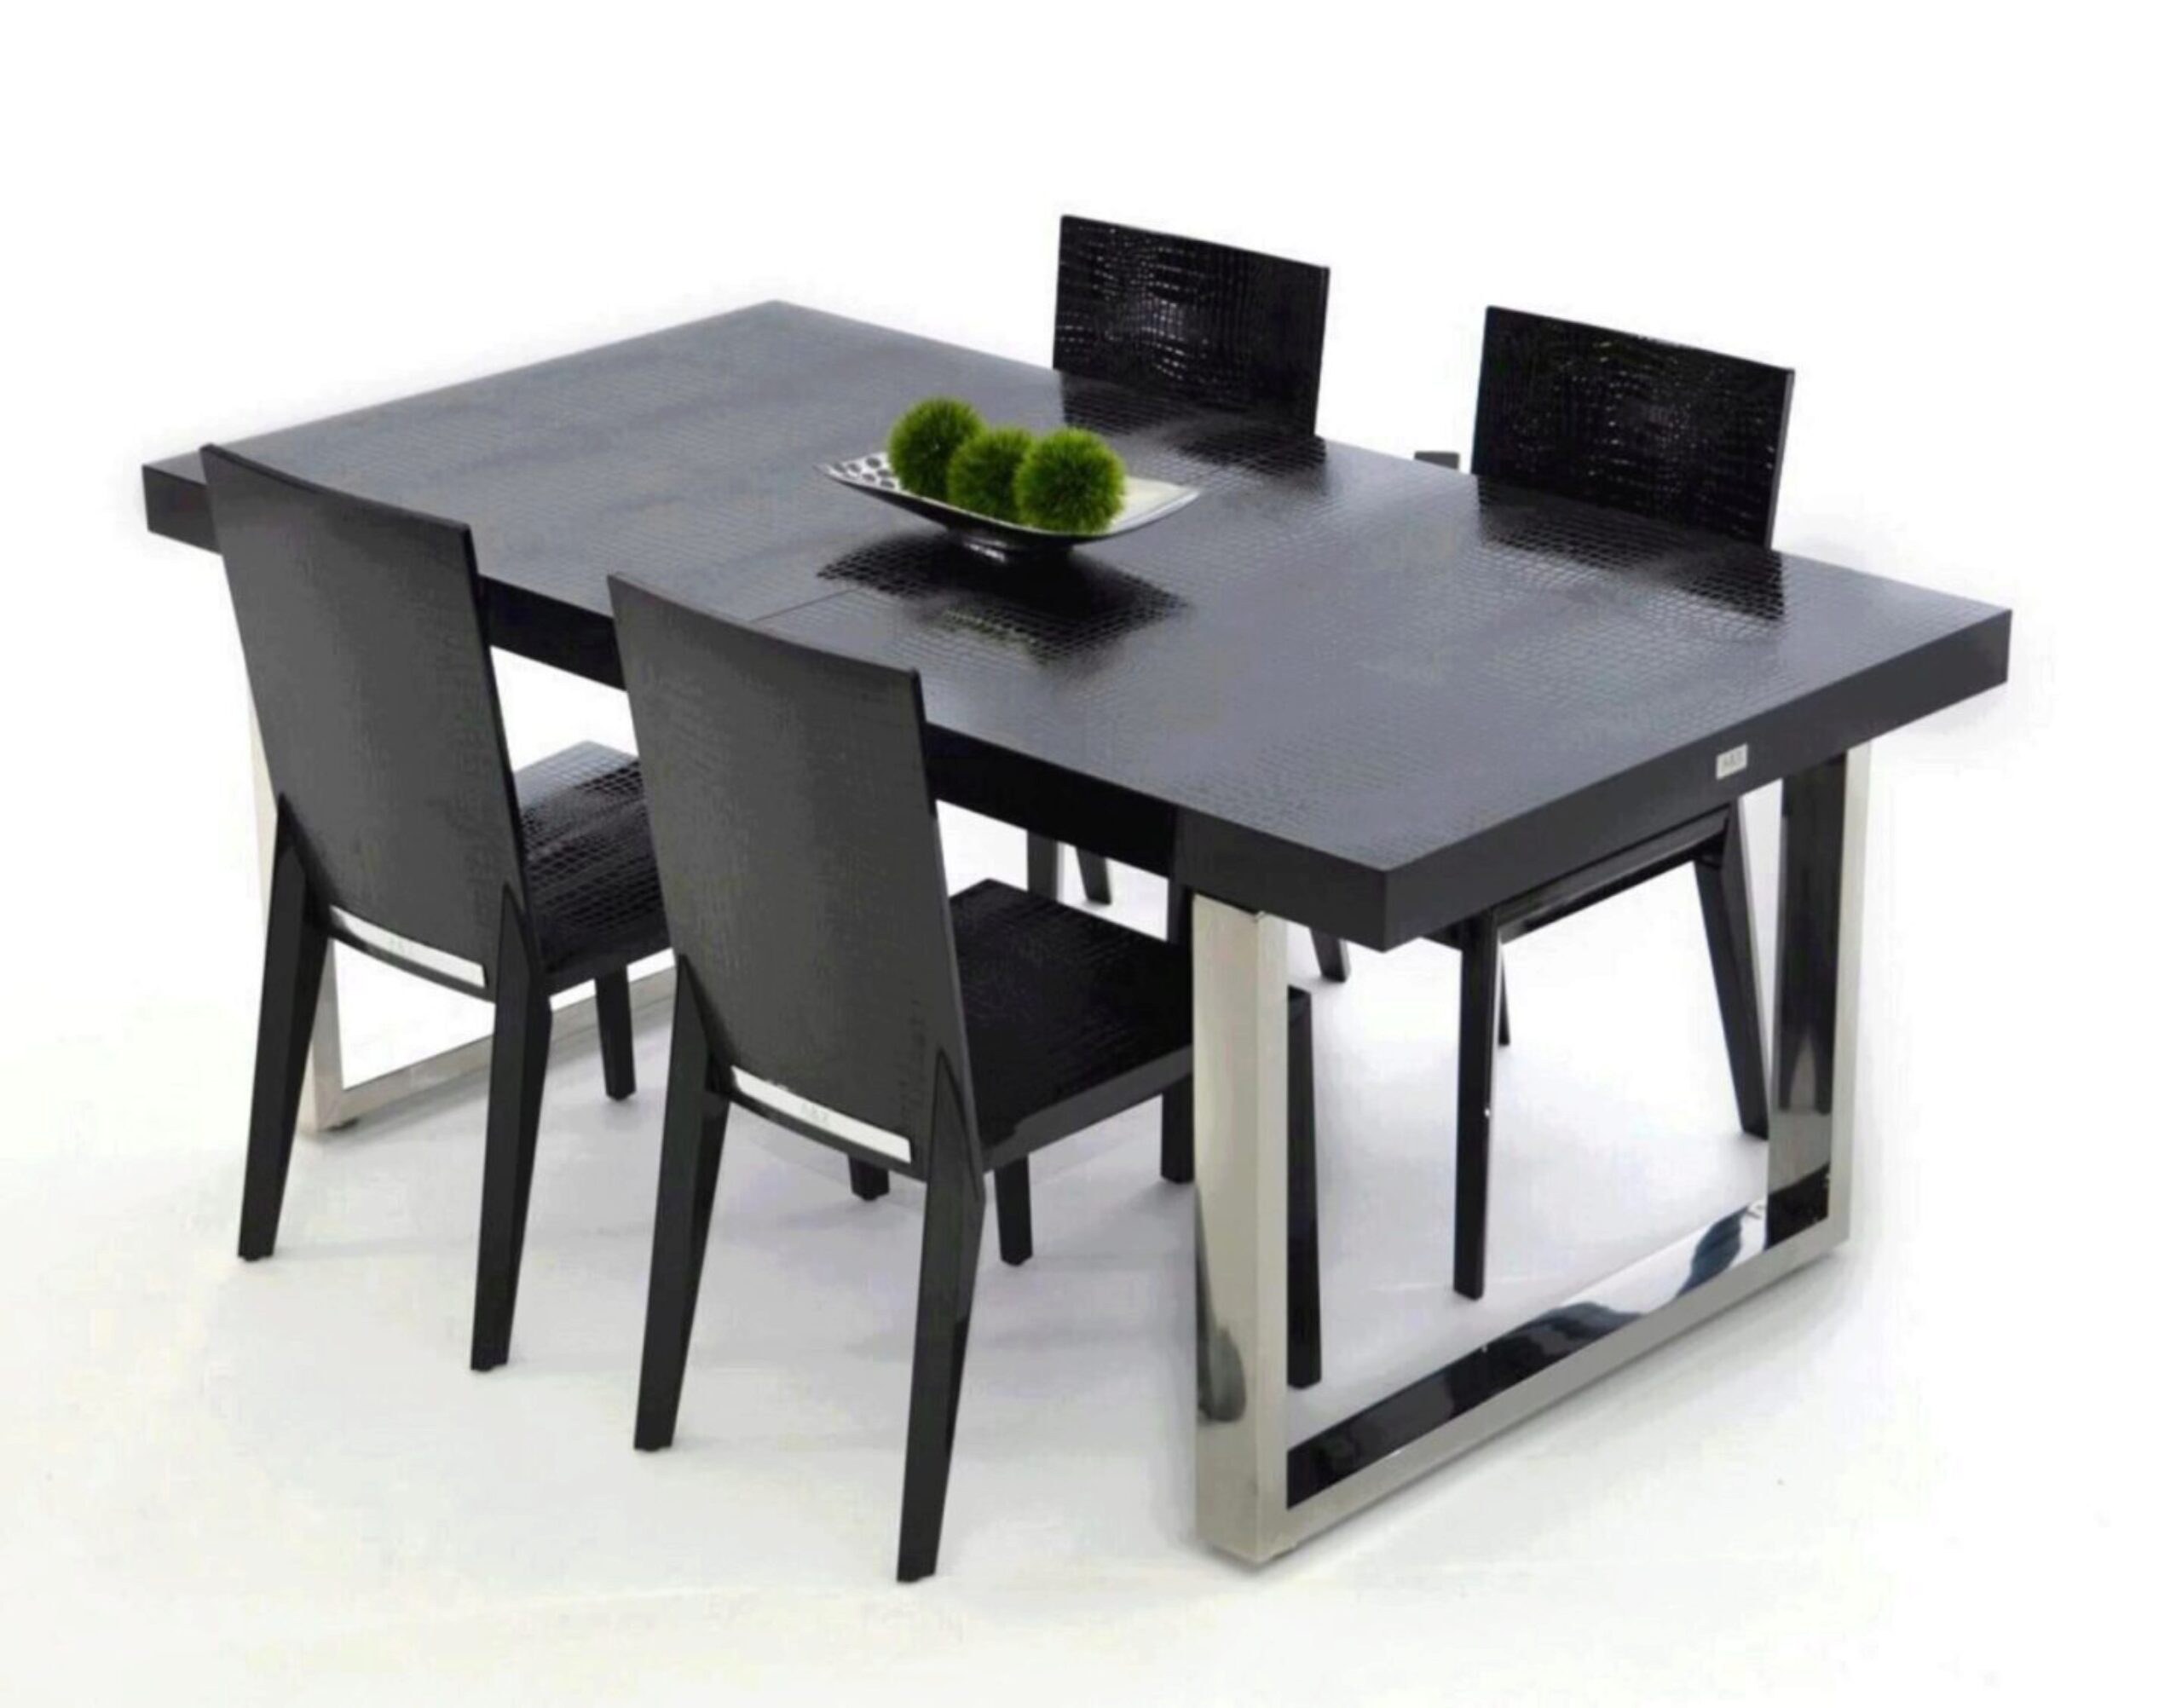 Черный стол на кухне. Стол обеденный Sagrada td 1397. Стол Lars 140 антрацит. Стол Dining Table черный. Стол Lars 160.